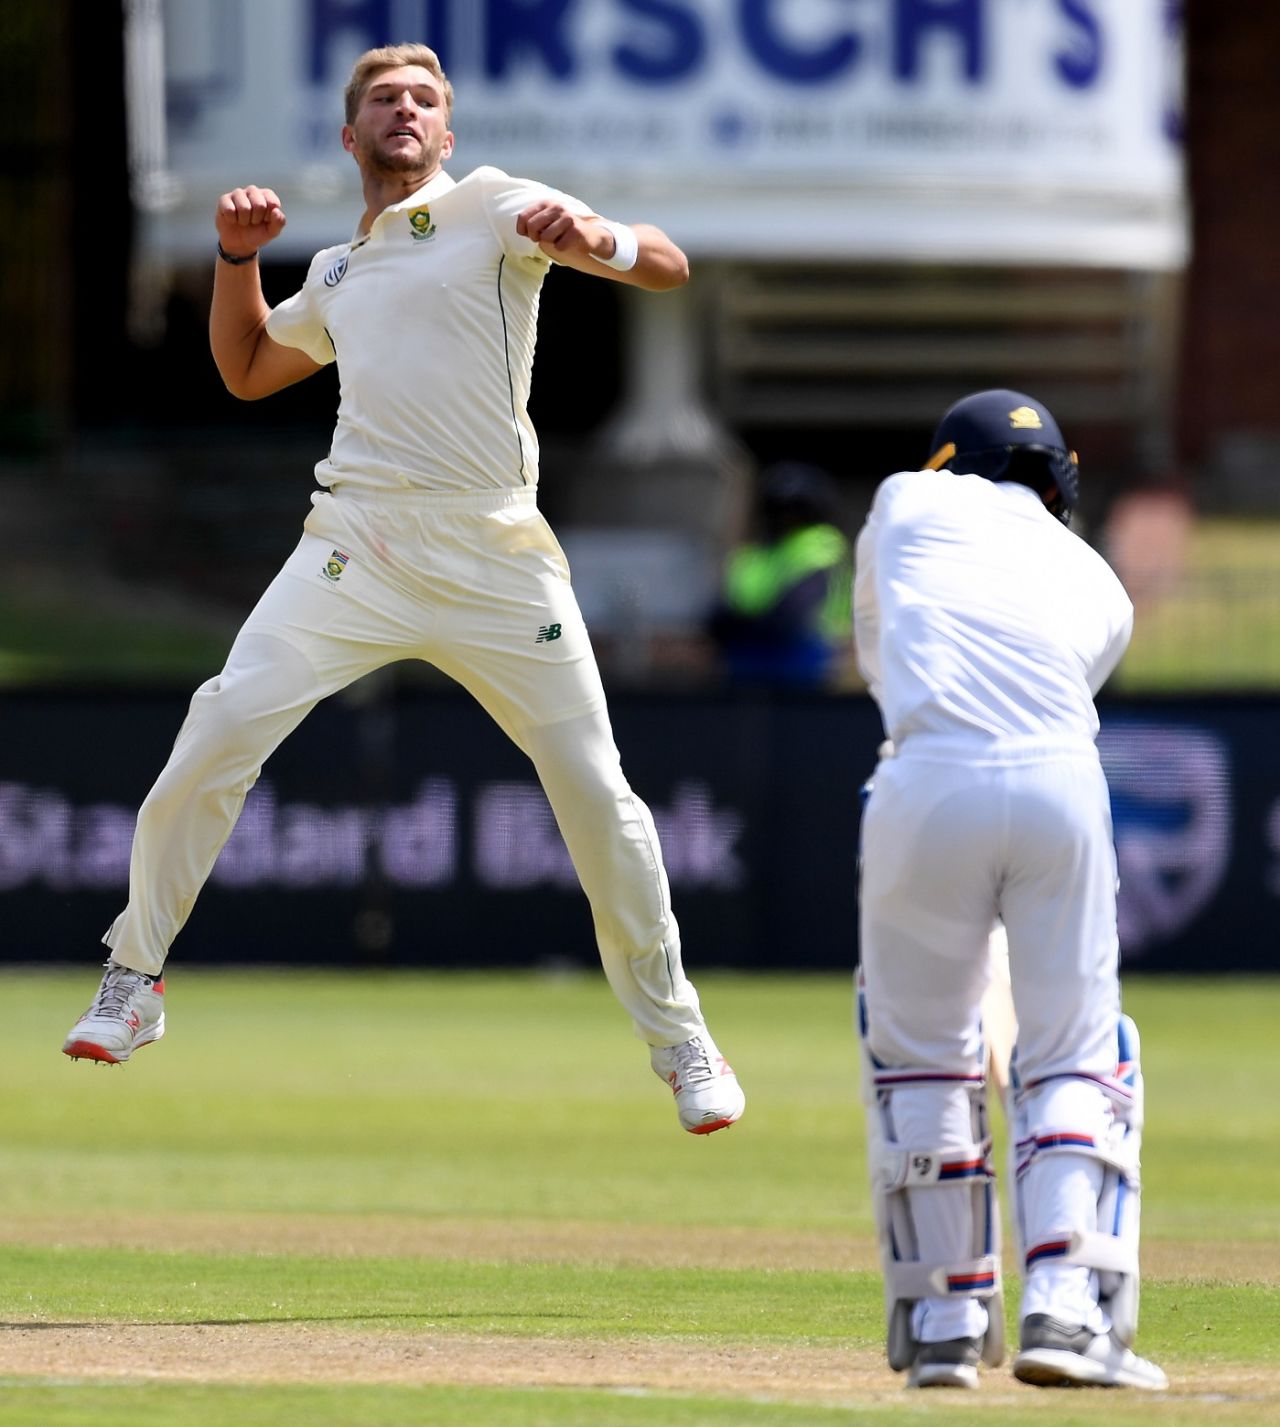 Wiaan Mulder celebrates the dismissal of Dhananjaya de Silva, South Africa v Sri Lanka, 2nd Test, Port Elizabeth, 2nd day, February 22, 2019